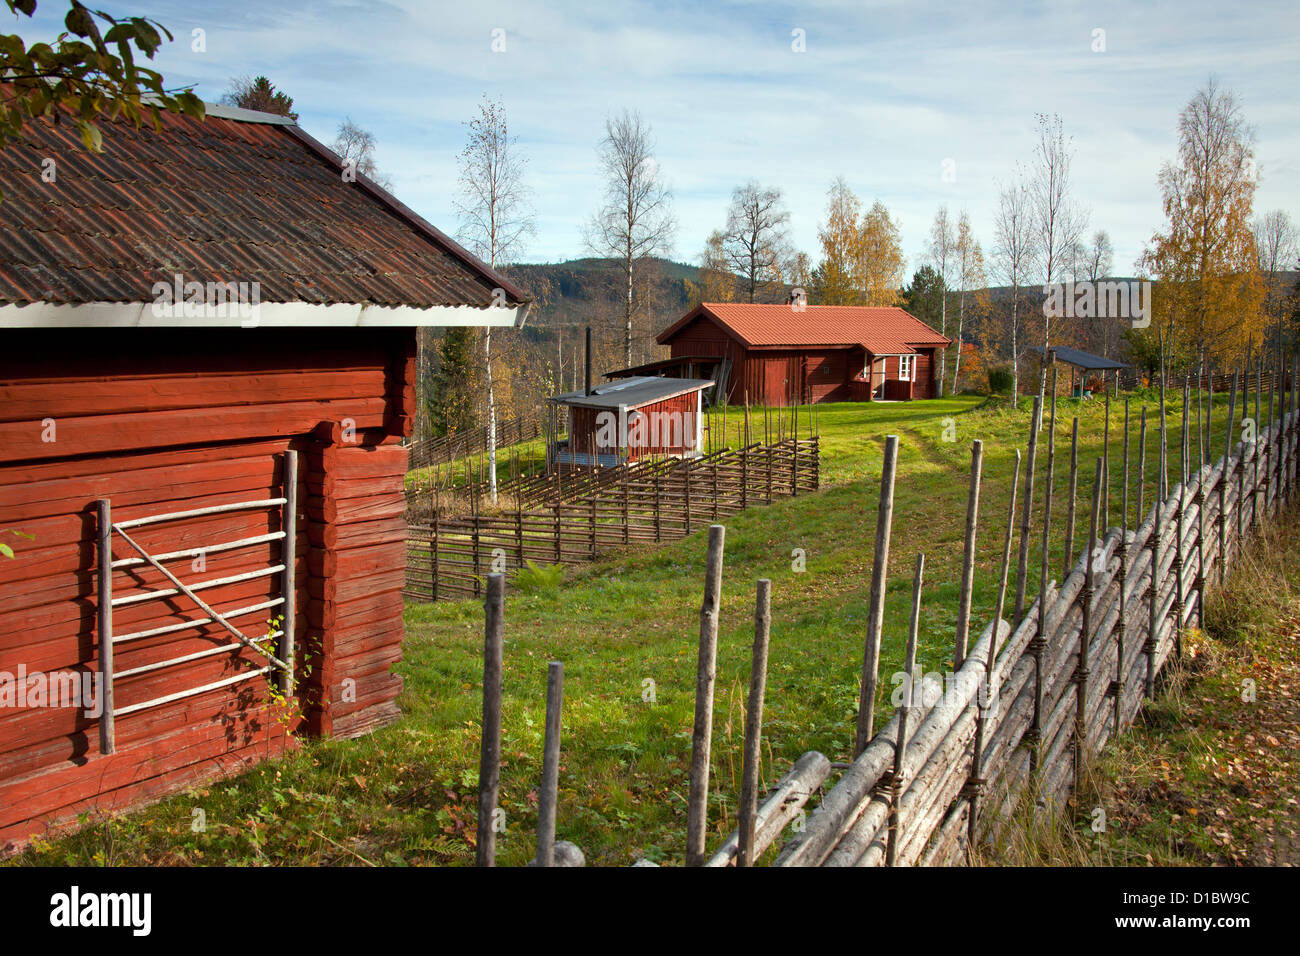 Casa rural Cortijo tradicional de madera roja en otoño, Dalarna, Suecia, Escandinavia Foto de stock